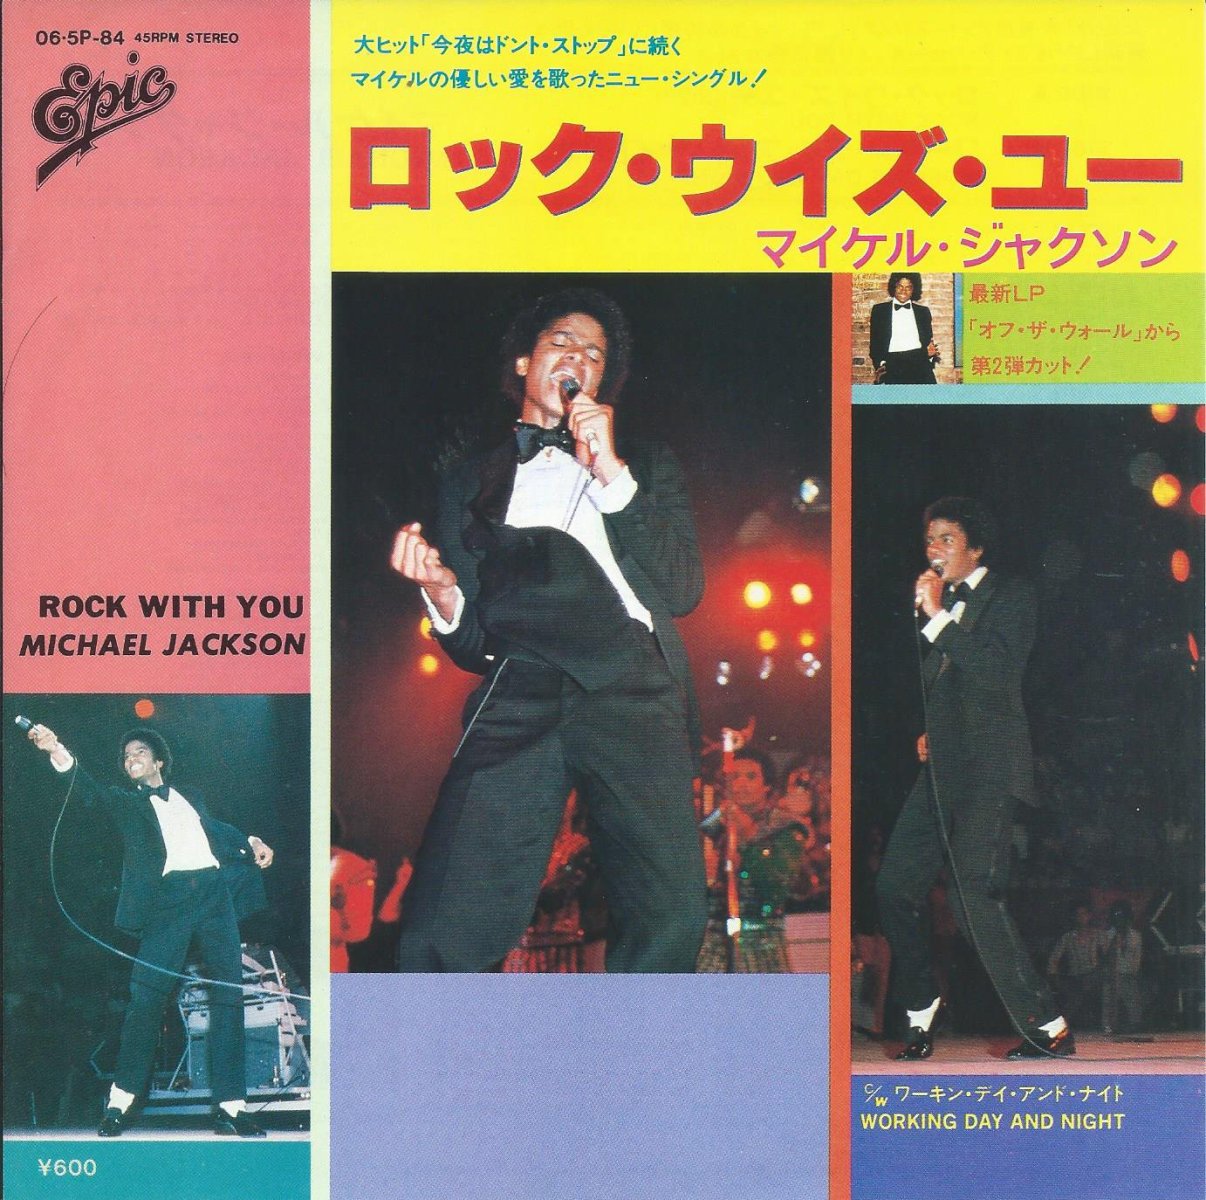 マイケル・ジャクソン MICHAEL JACKSON / ロック・ウイズ・ユー ROCK WITH YOU (7) - HIP TANK  RECORDS